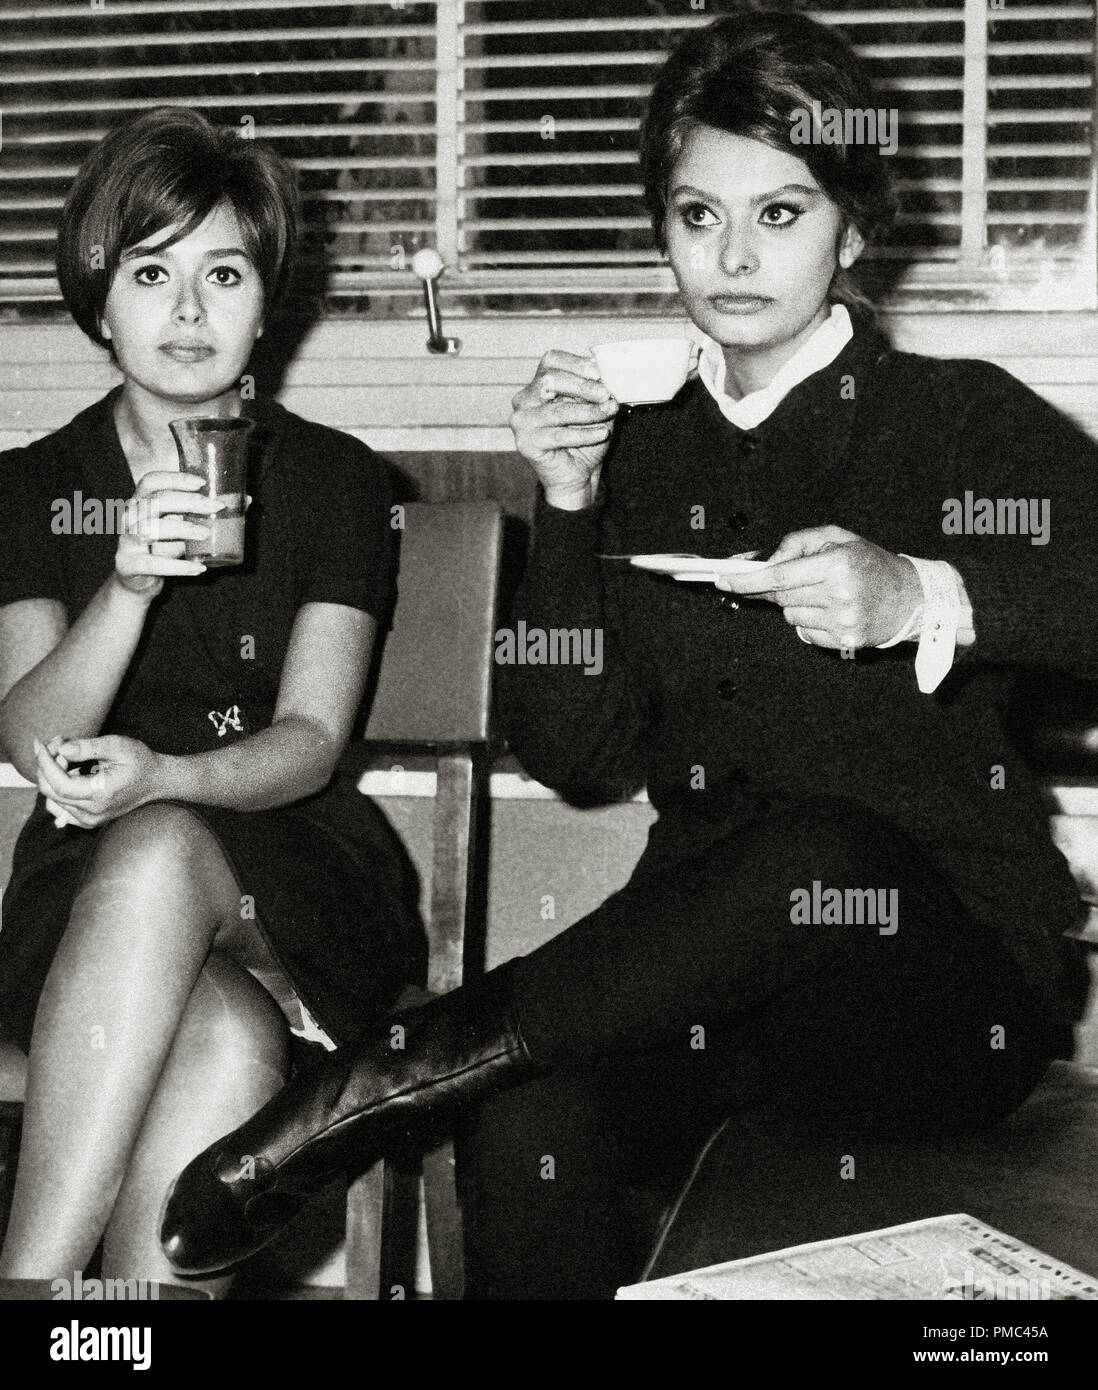 Sophia Loren mit ihrer Schwester Anna Maria Villani Scicolone (aka Anna Maria Mussolini), ca. 1961 Datei Referenz # 33536 052 THA Stockfoto